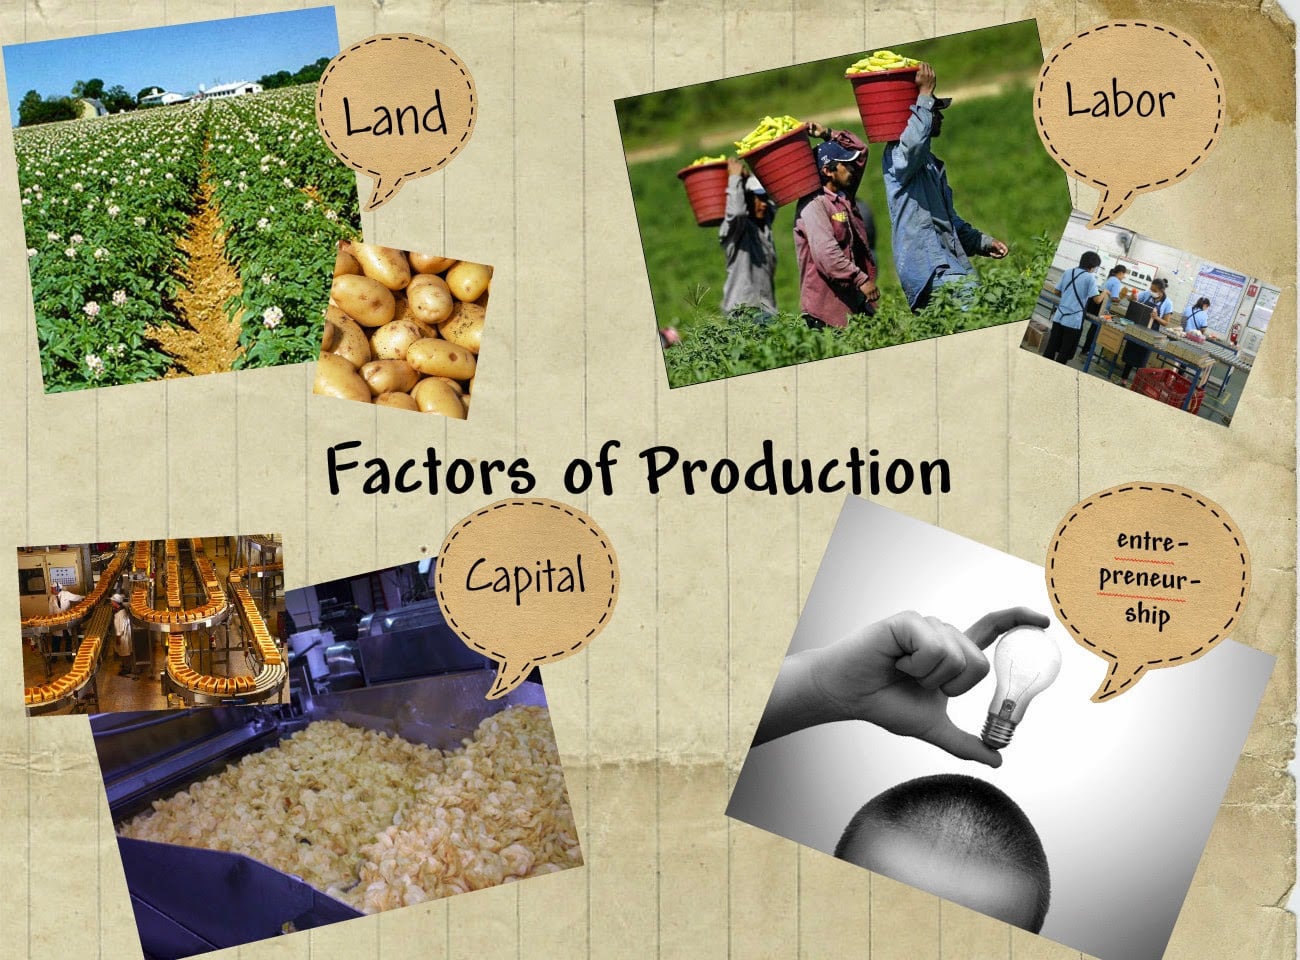 Sebutkan sumber daya yang termasuk ke dalam faktor produksi alam